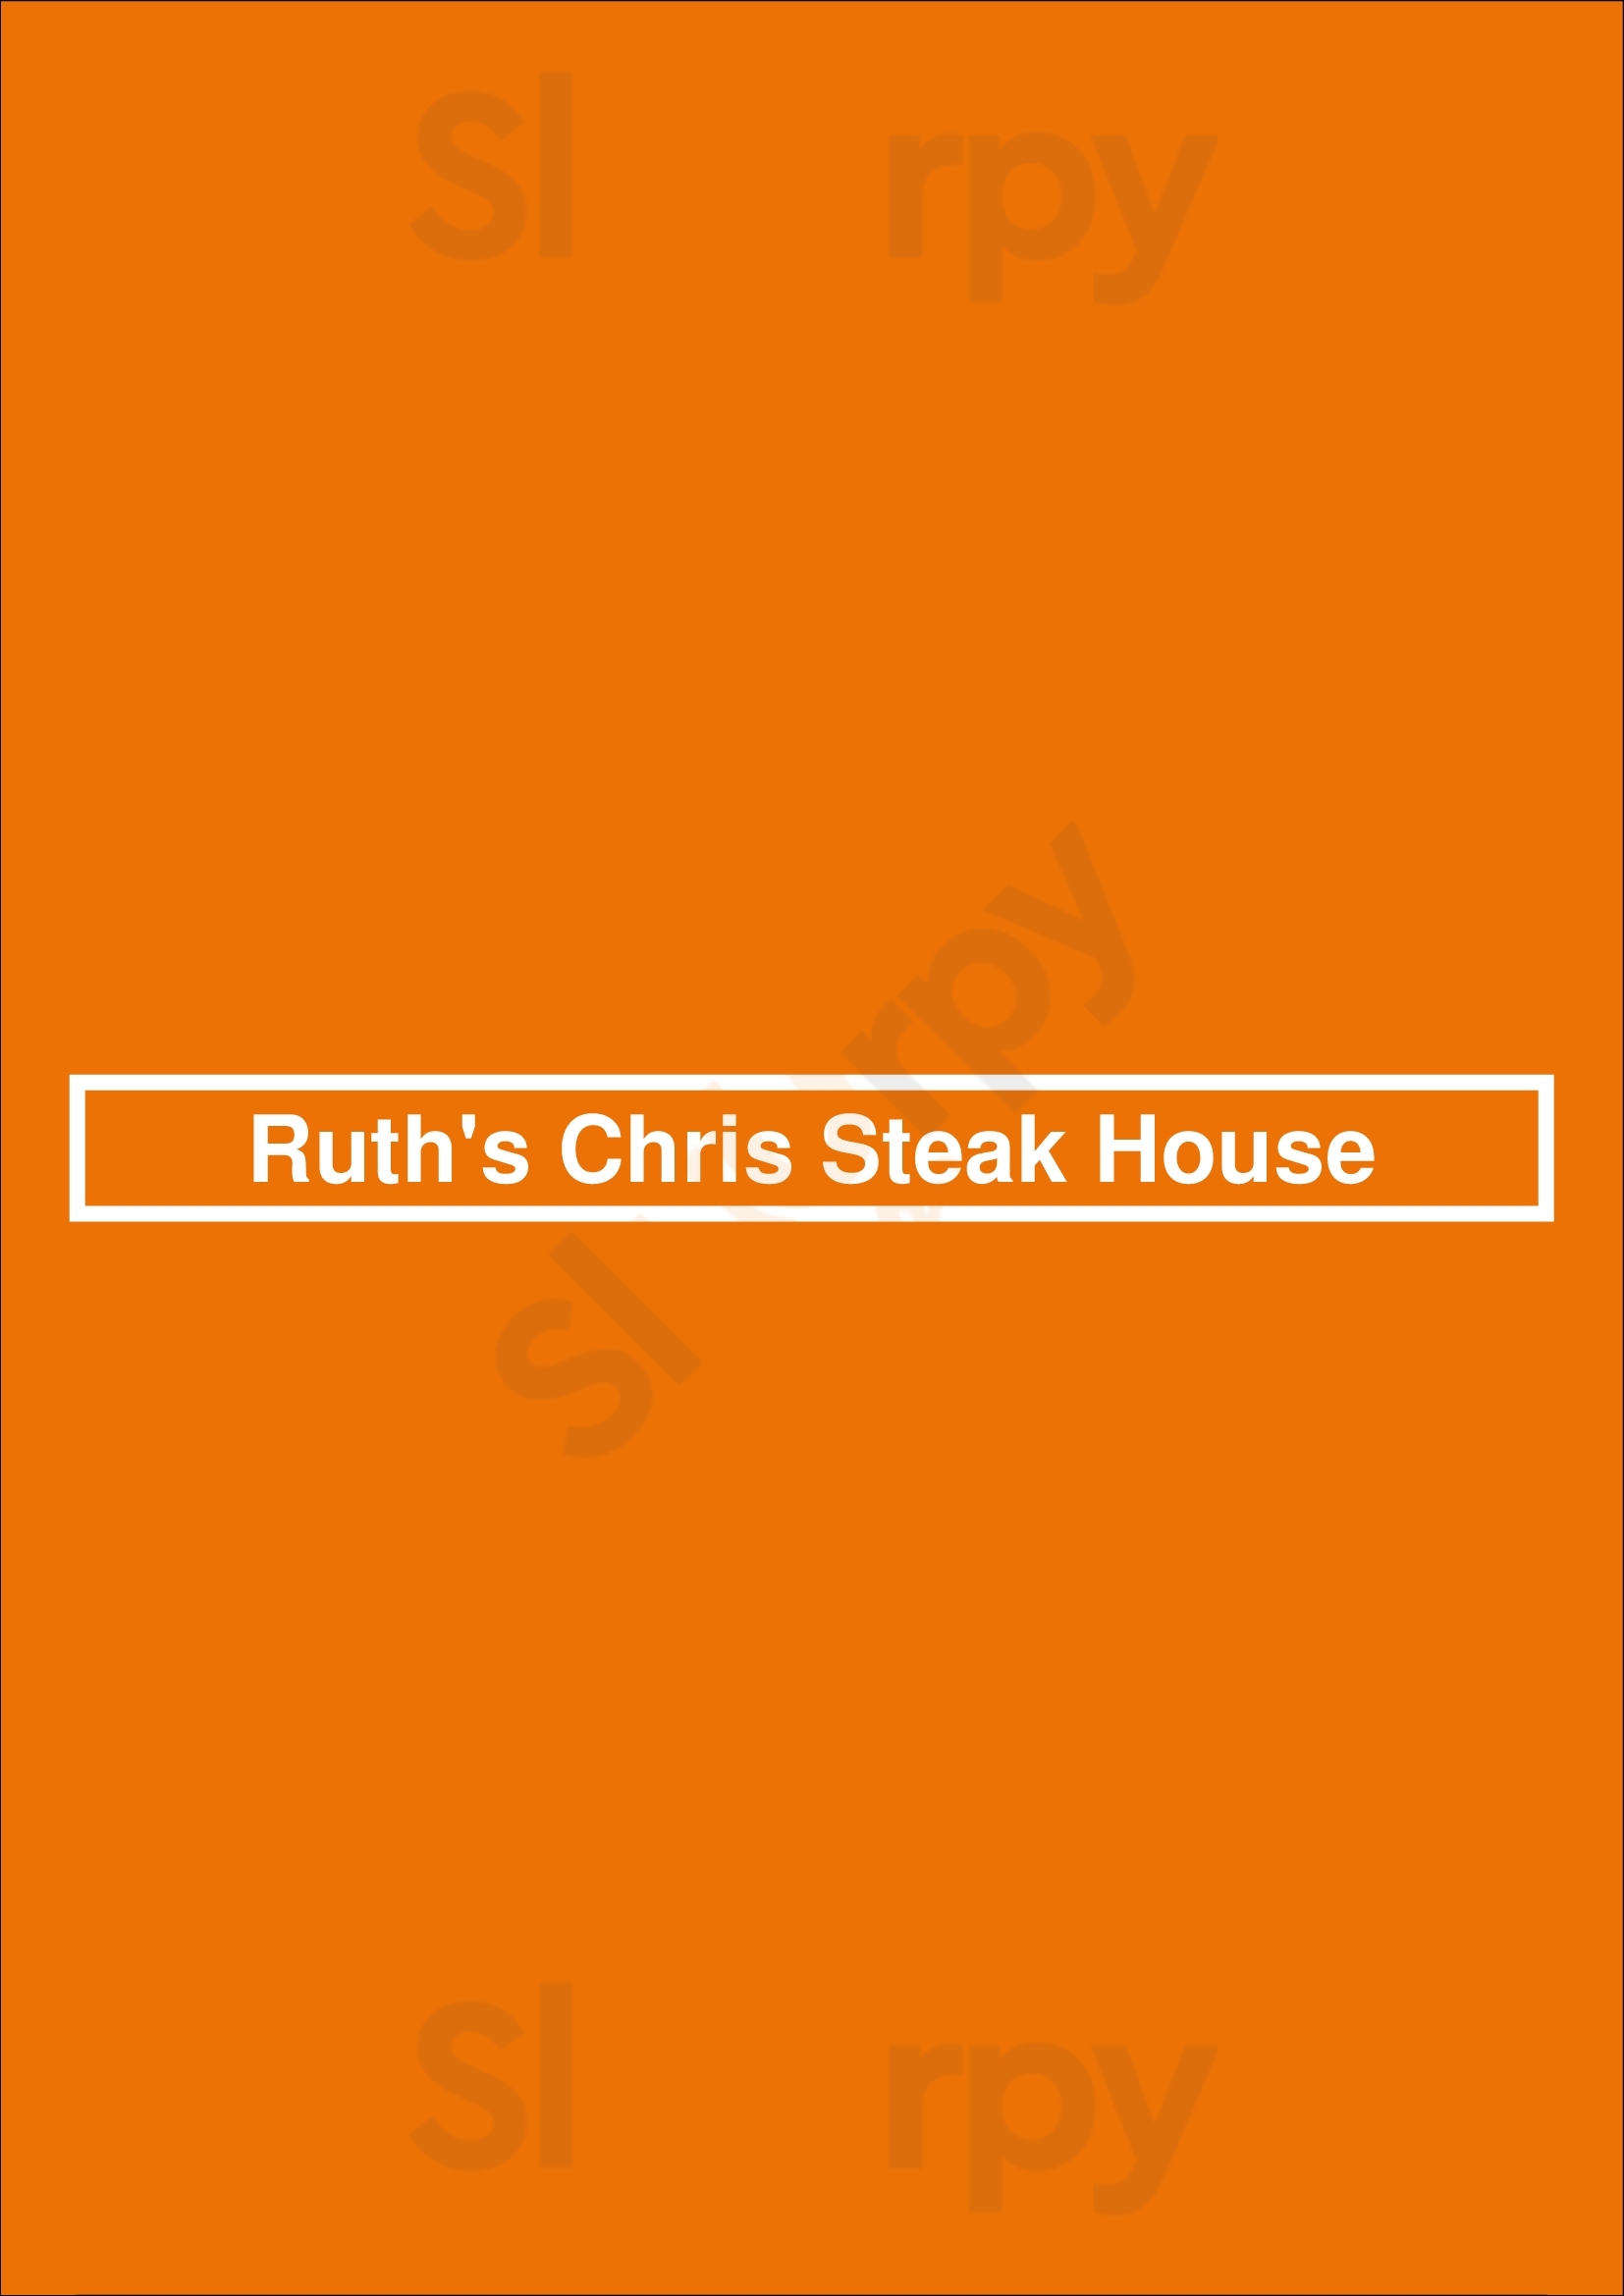 Ruth's Chris Steak House St. Petersburg Menu - 1